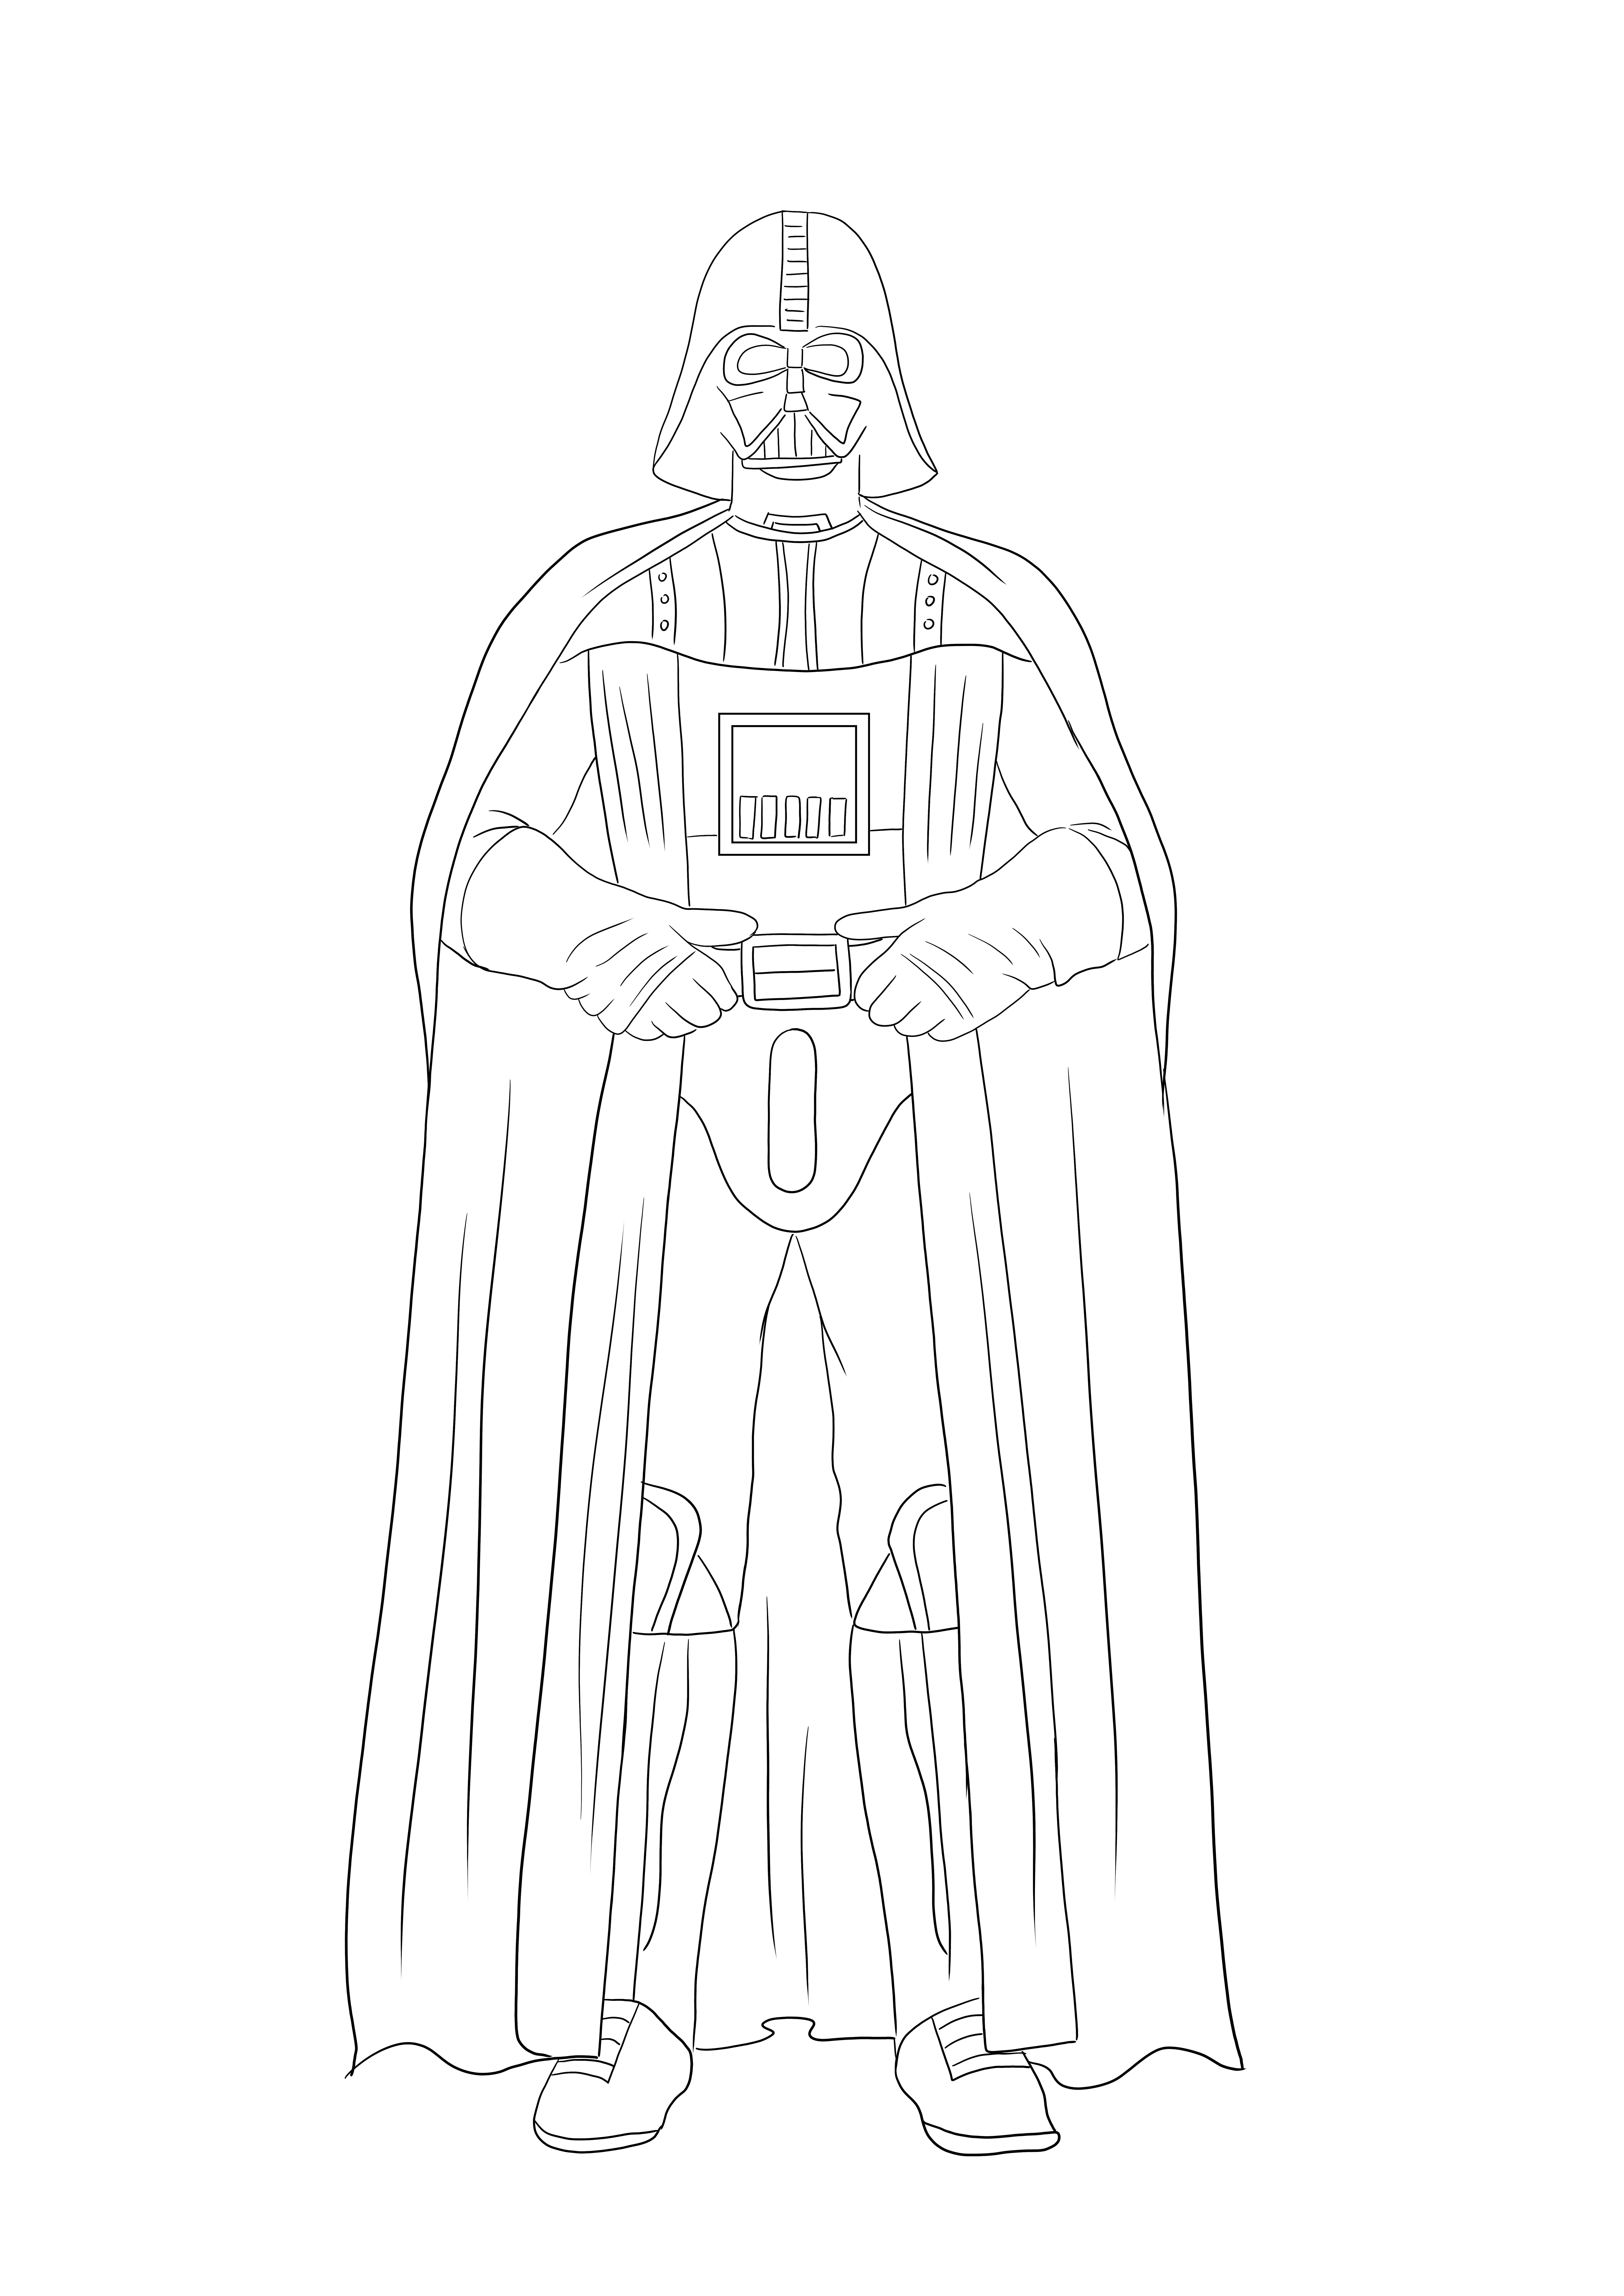 Imaginea de colorat Darth Vader este gata pentru a fi tipărită și colorată de toți fanii săi